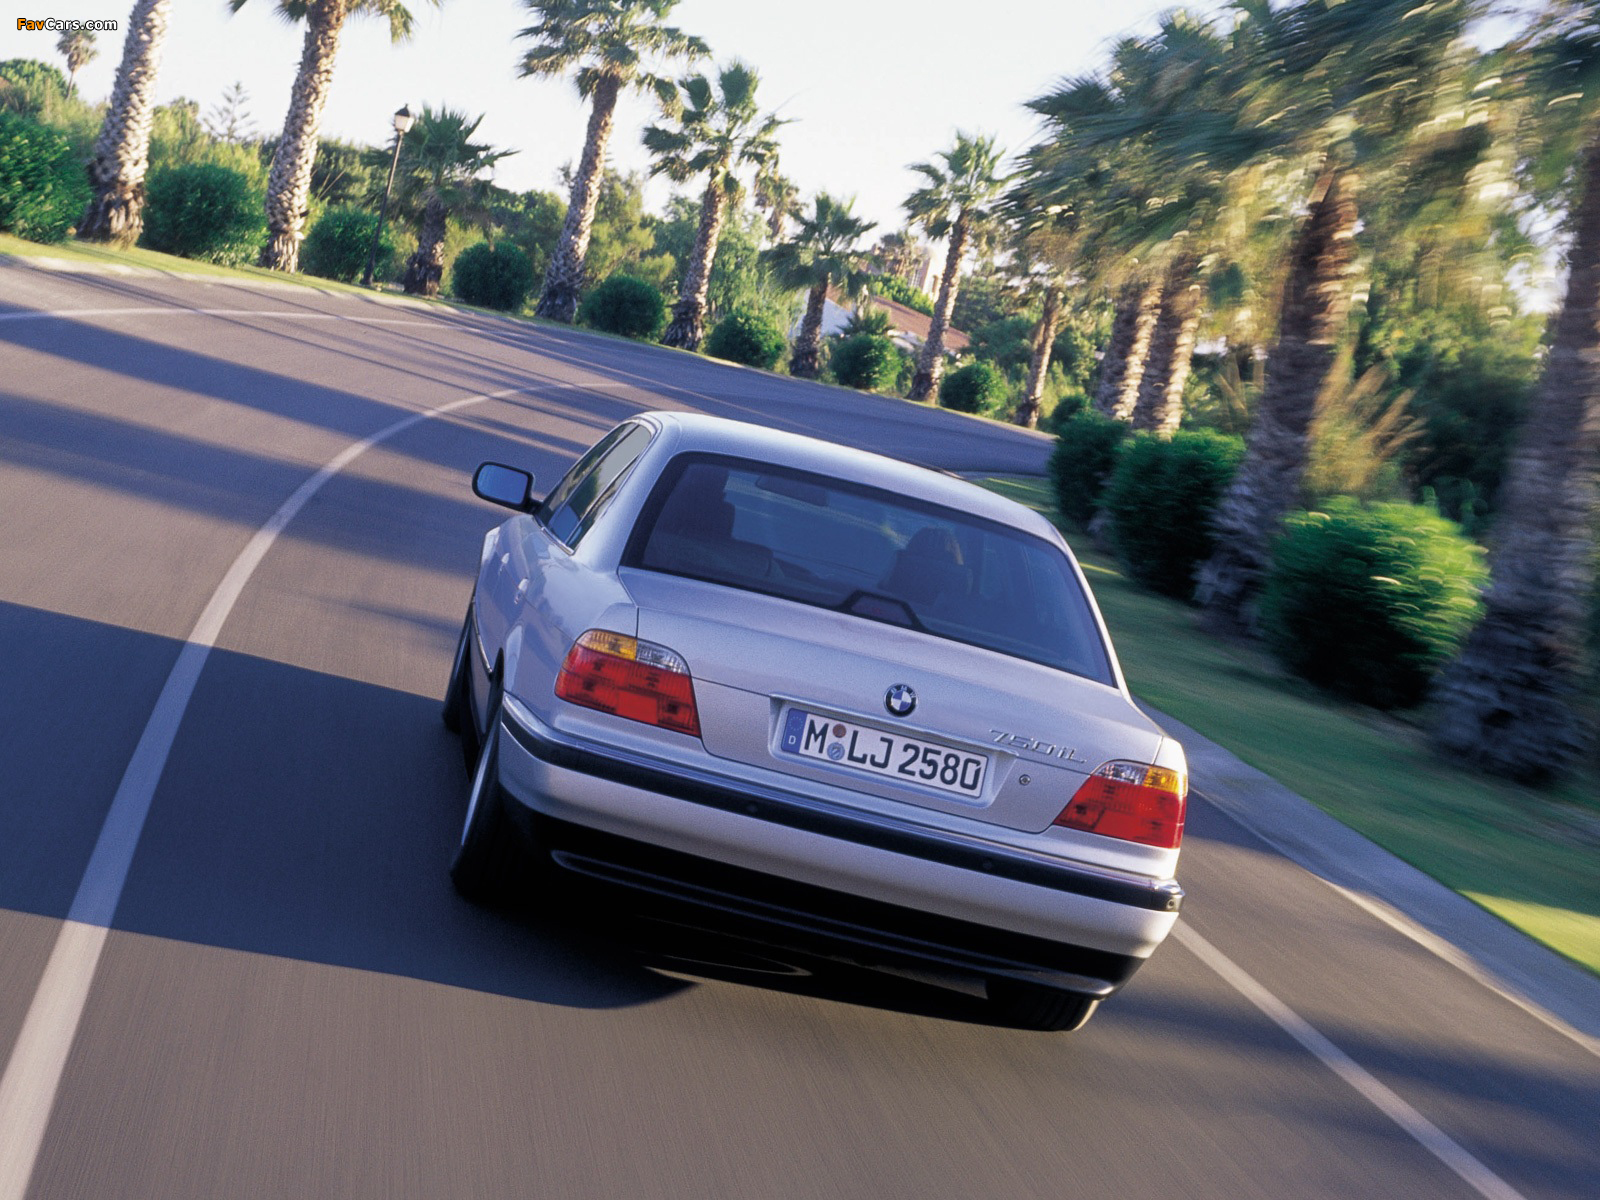 BMW 750iL (E38) 1998–2001 photos (1600 x 1200)